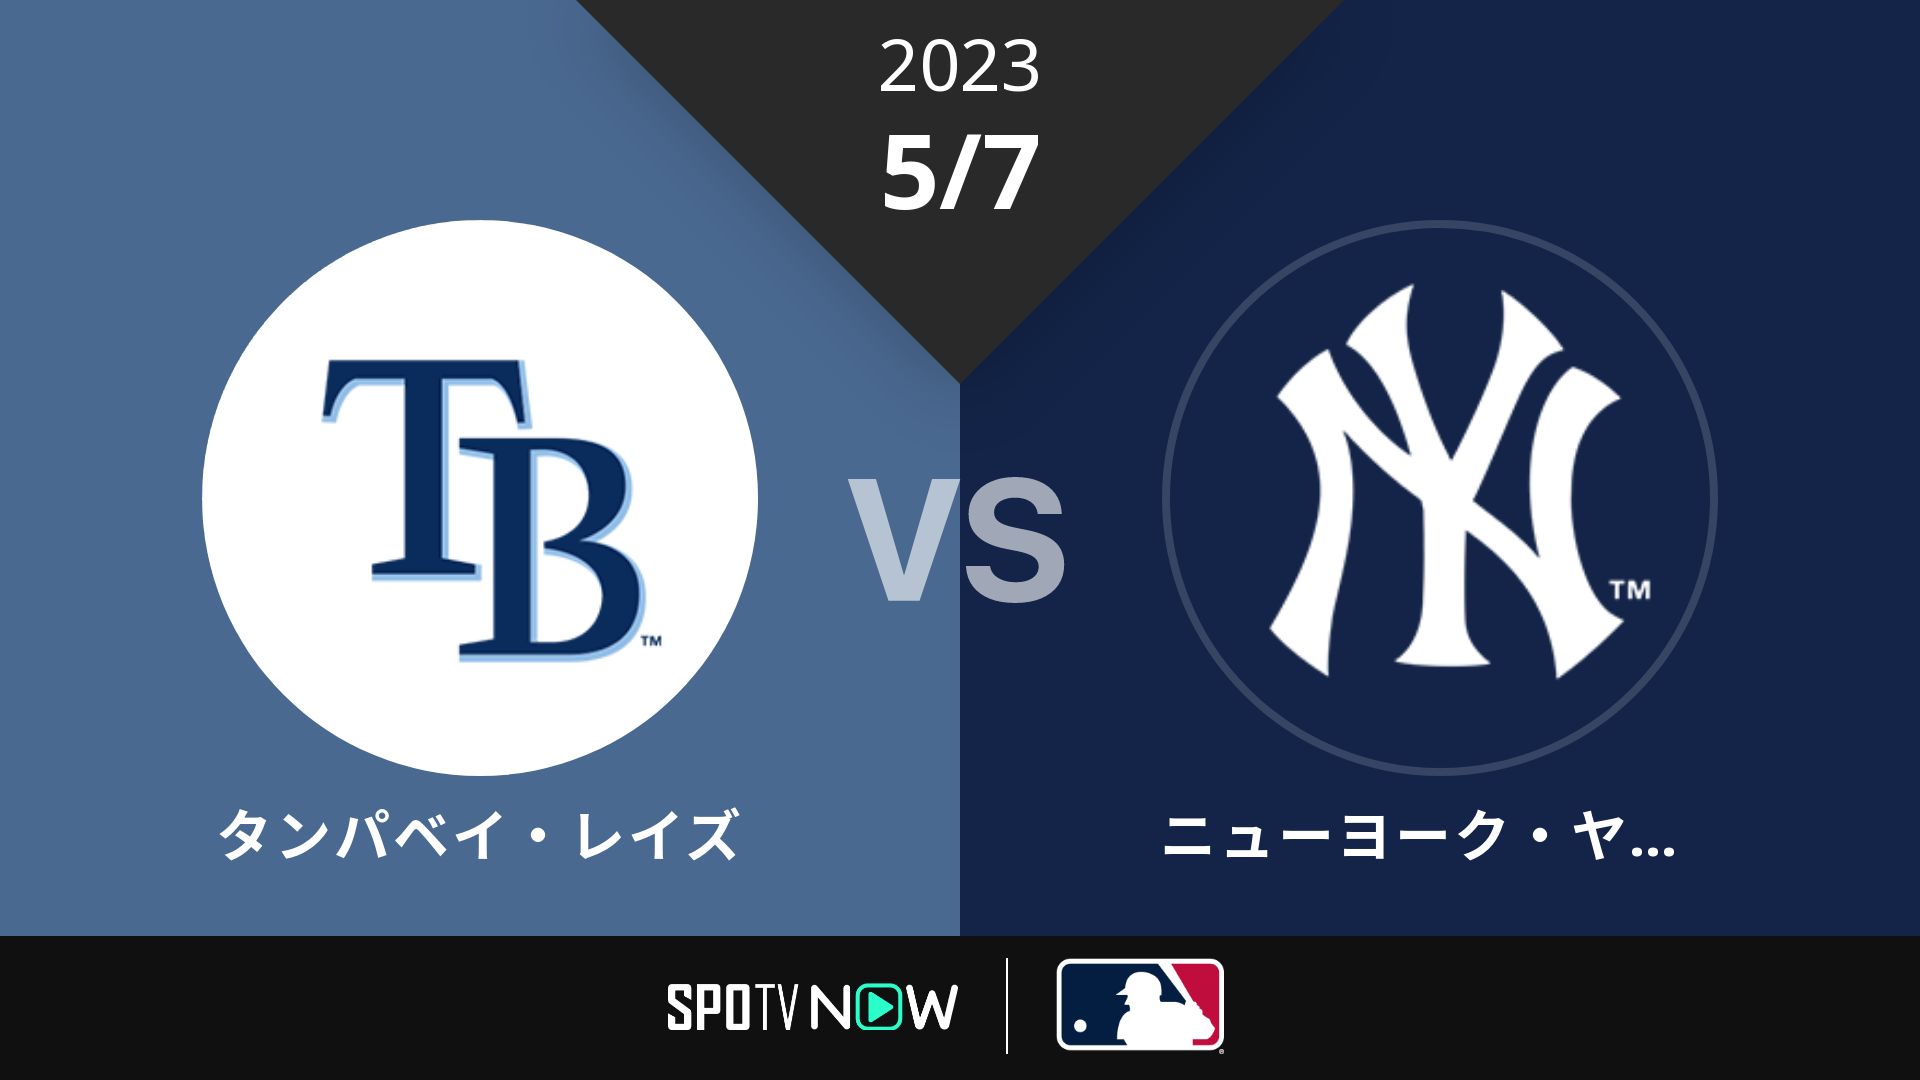 2023/5/7 レイズ vs ヤンキース [MLB]